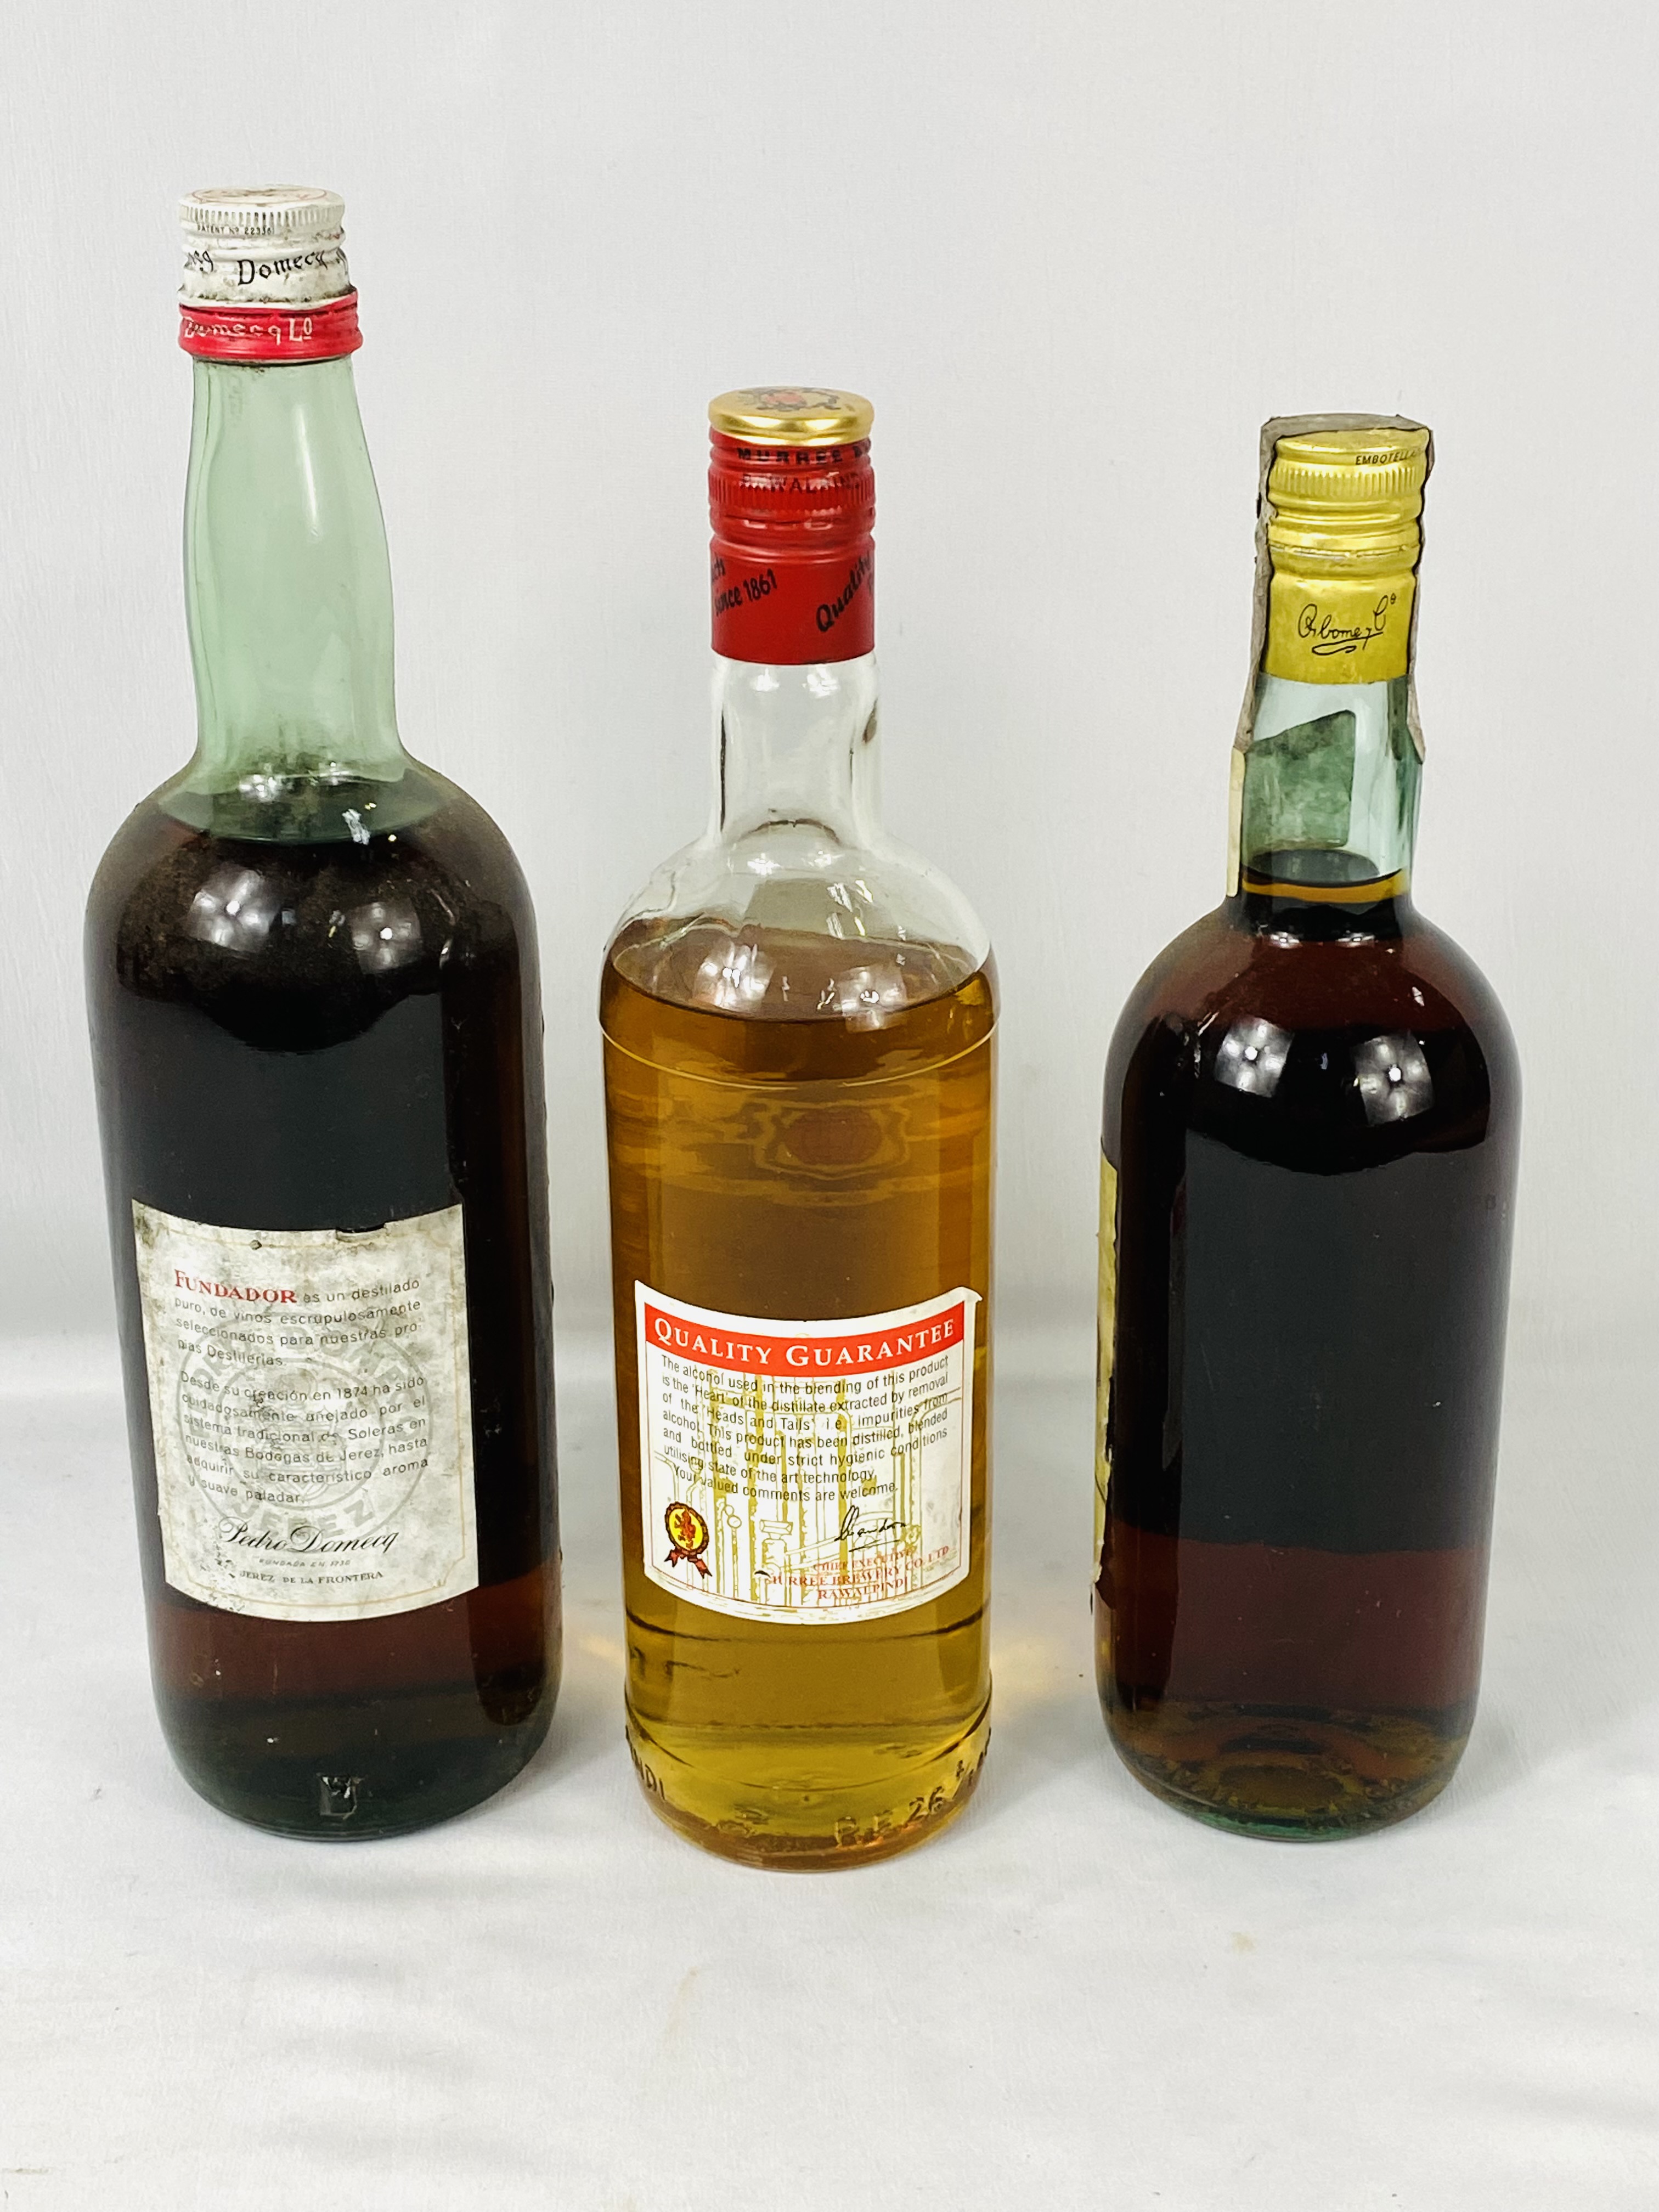 Bottle of Murree's malt whisky, bottle of Pedro Domecq, bottle Magno brandy - Image 2 of 3